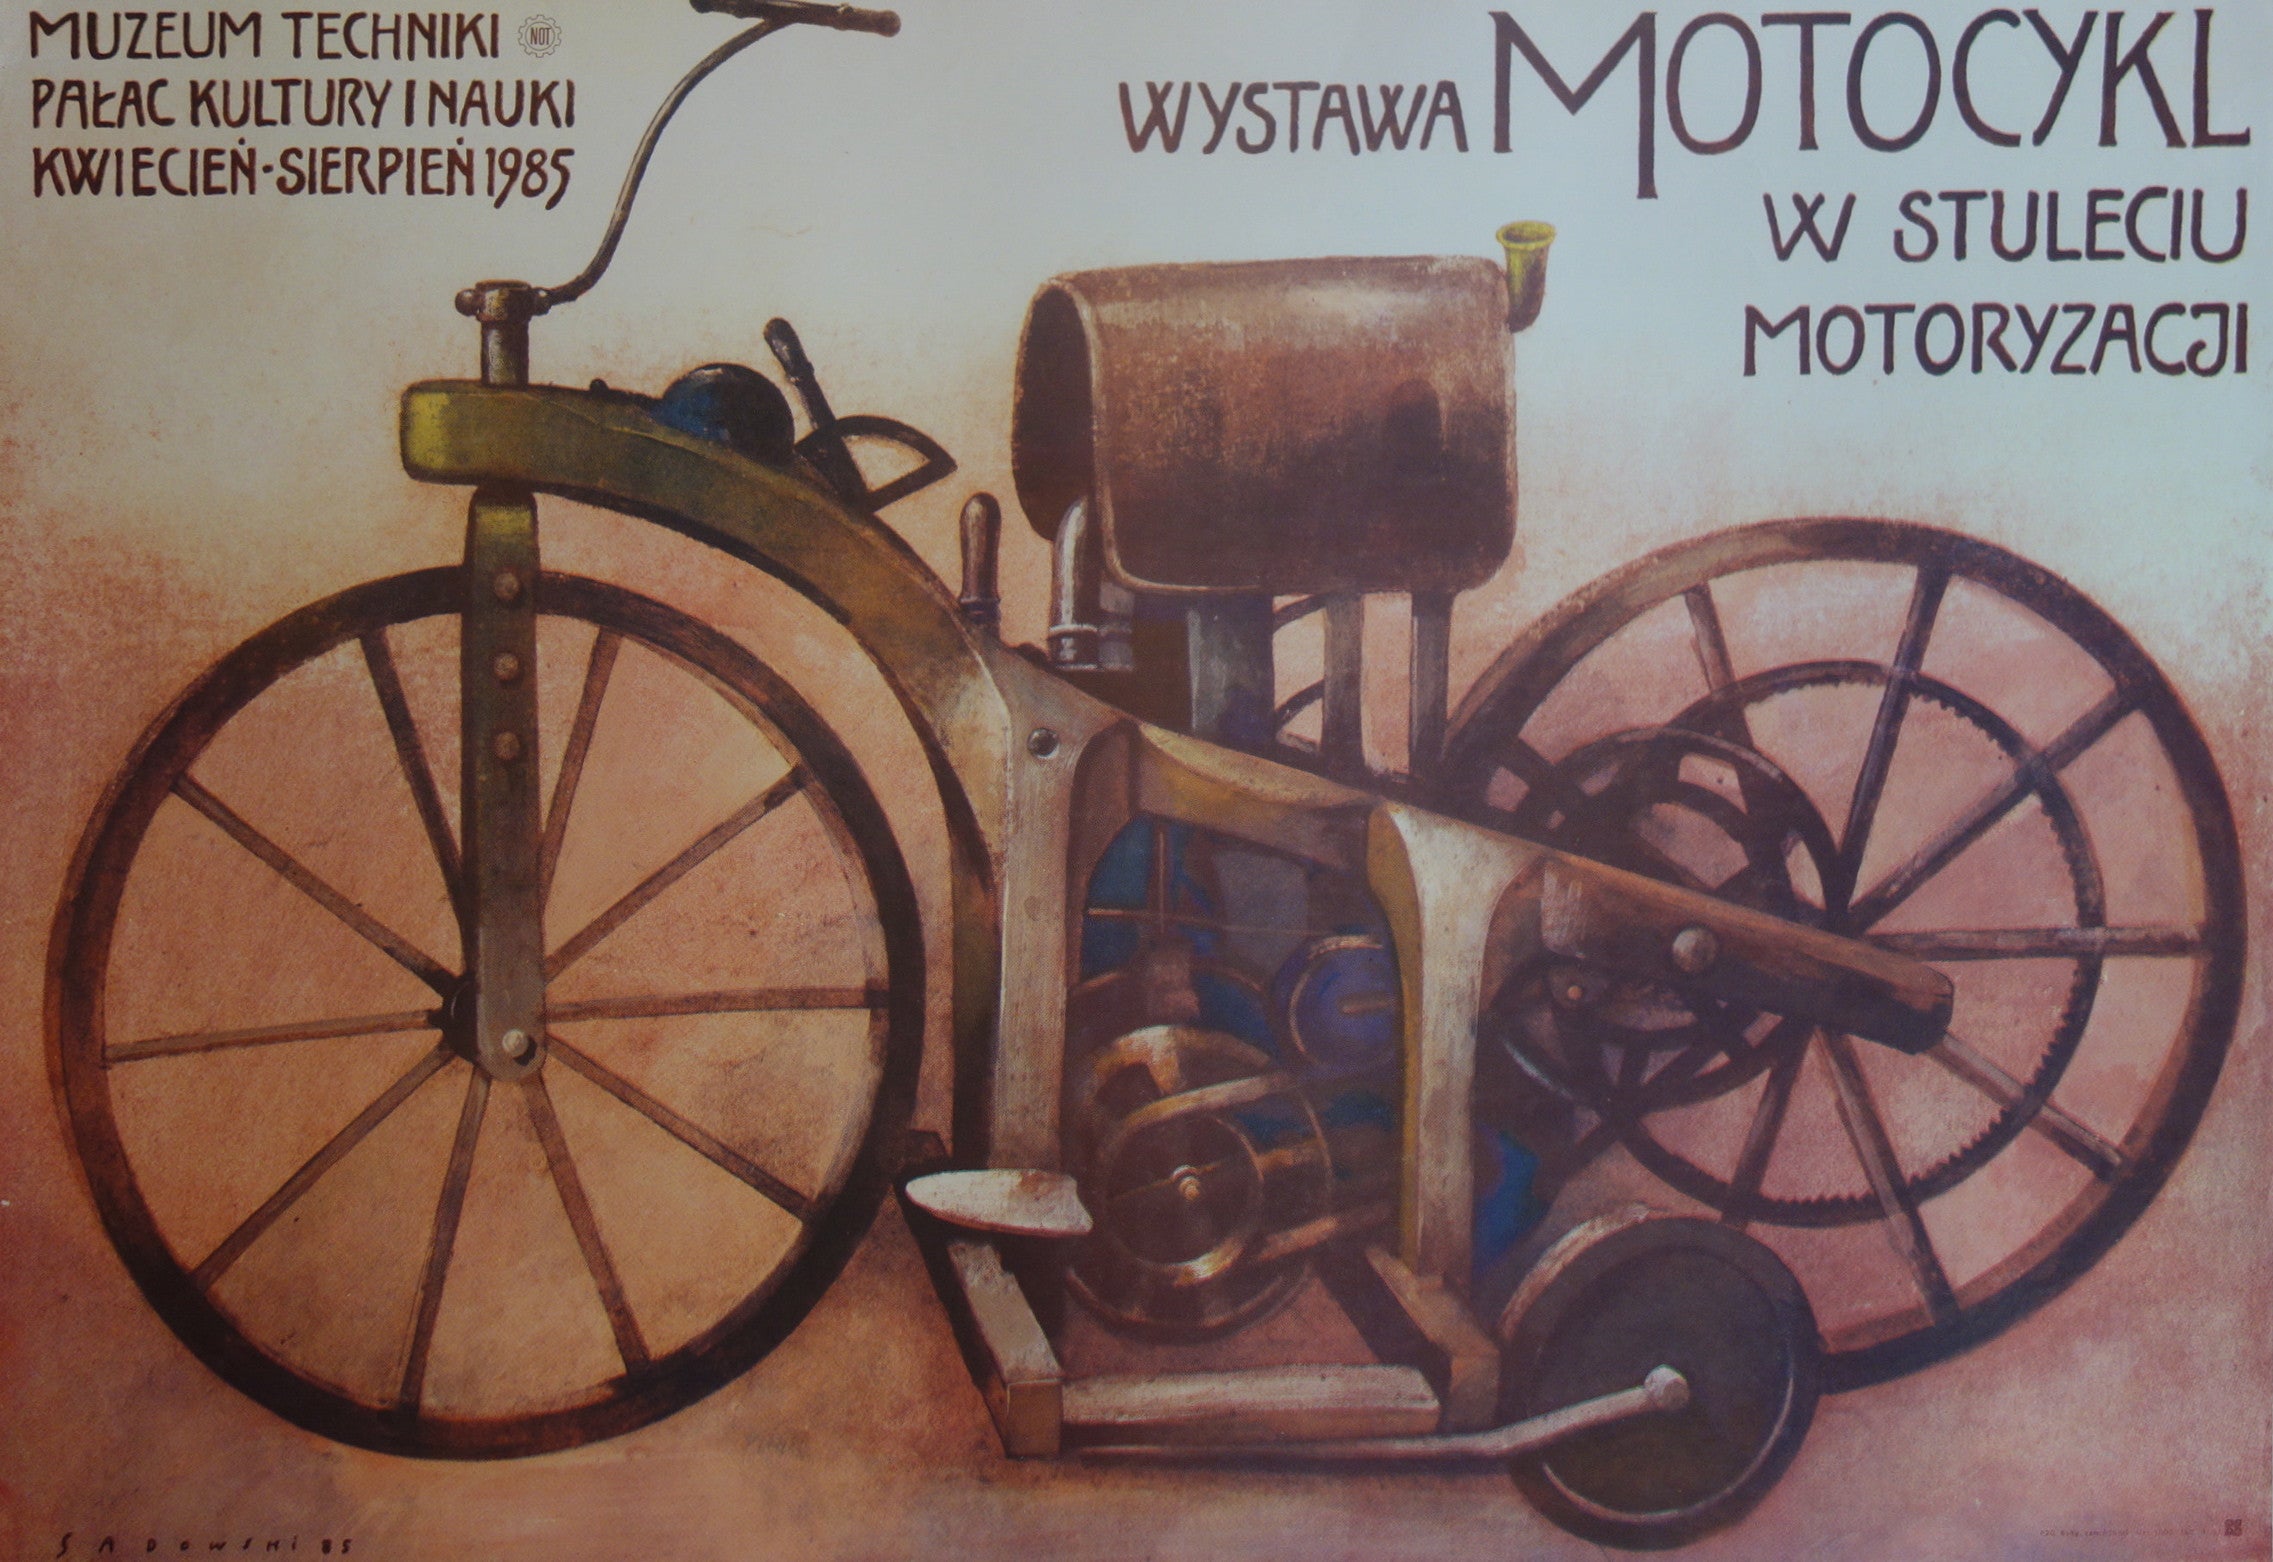 Wystawa Motocykl w Stuleciu Motoryzacji